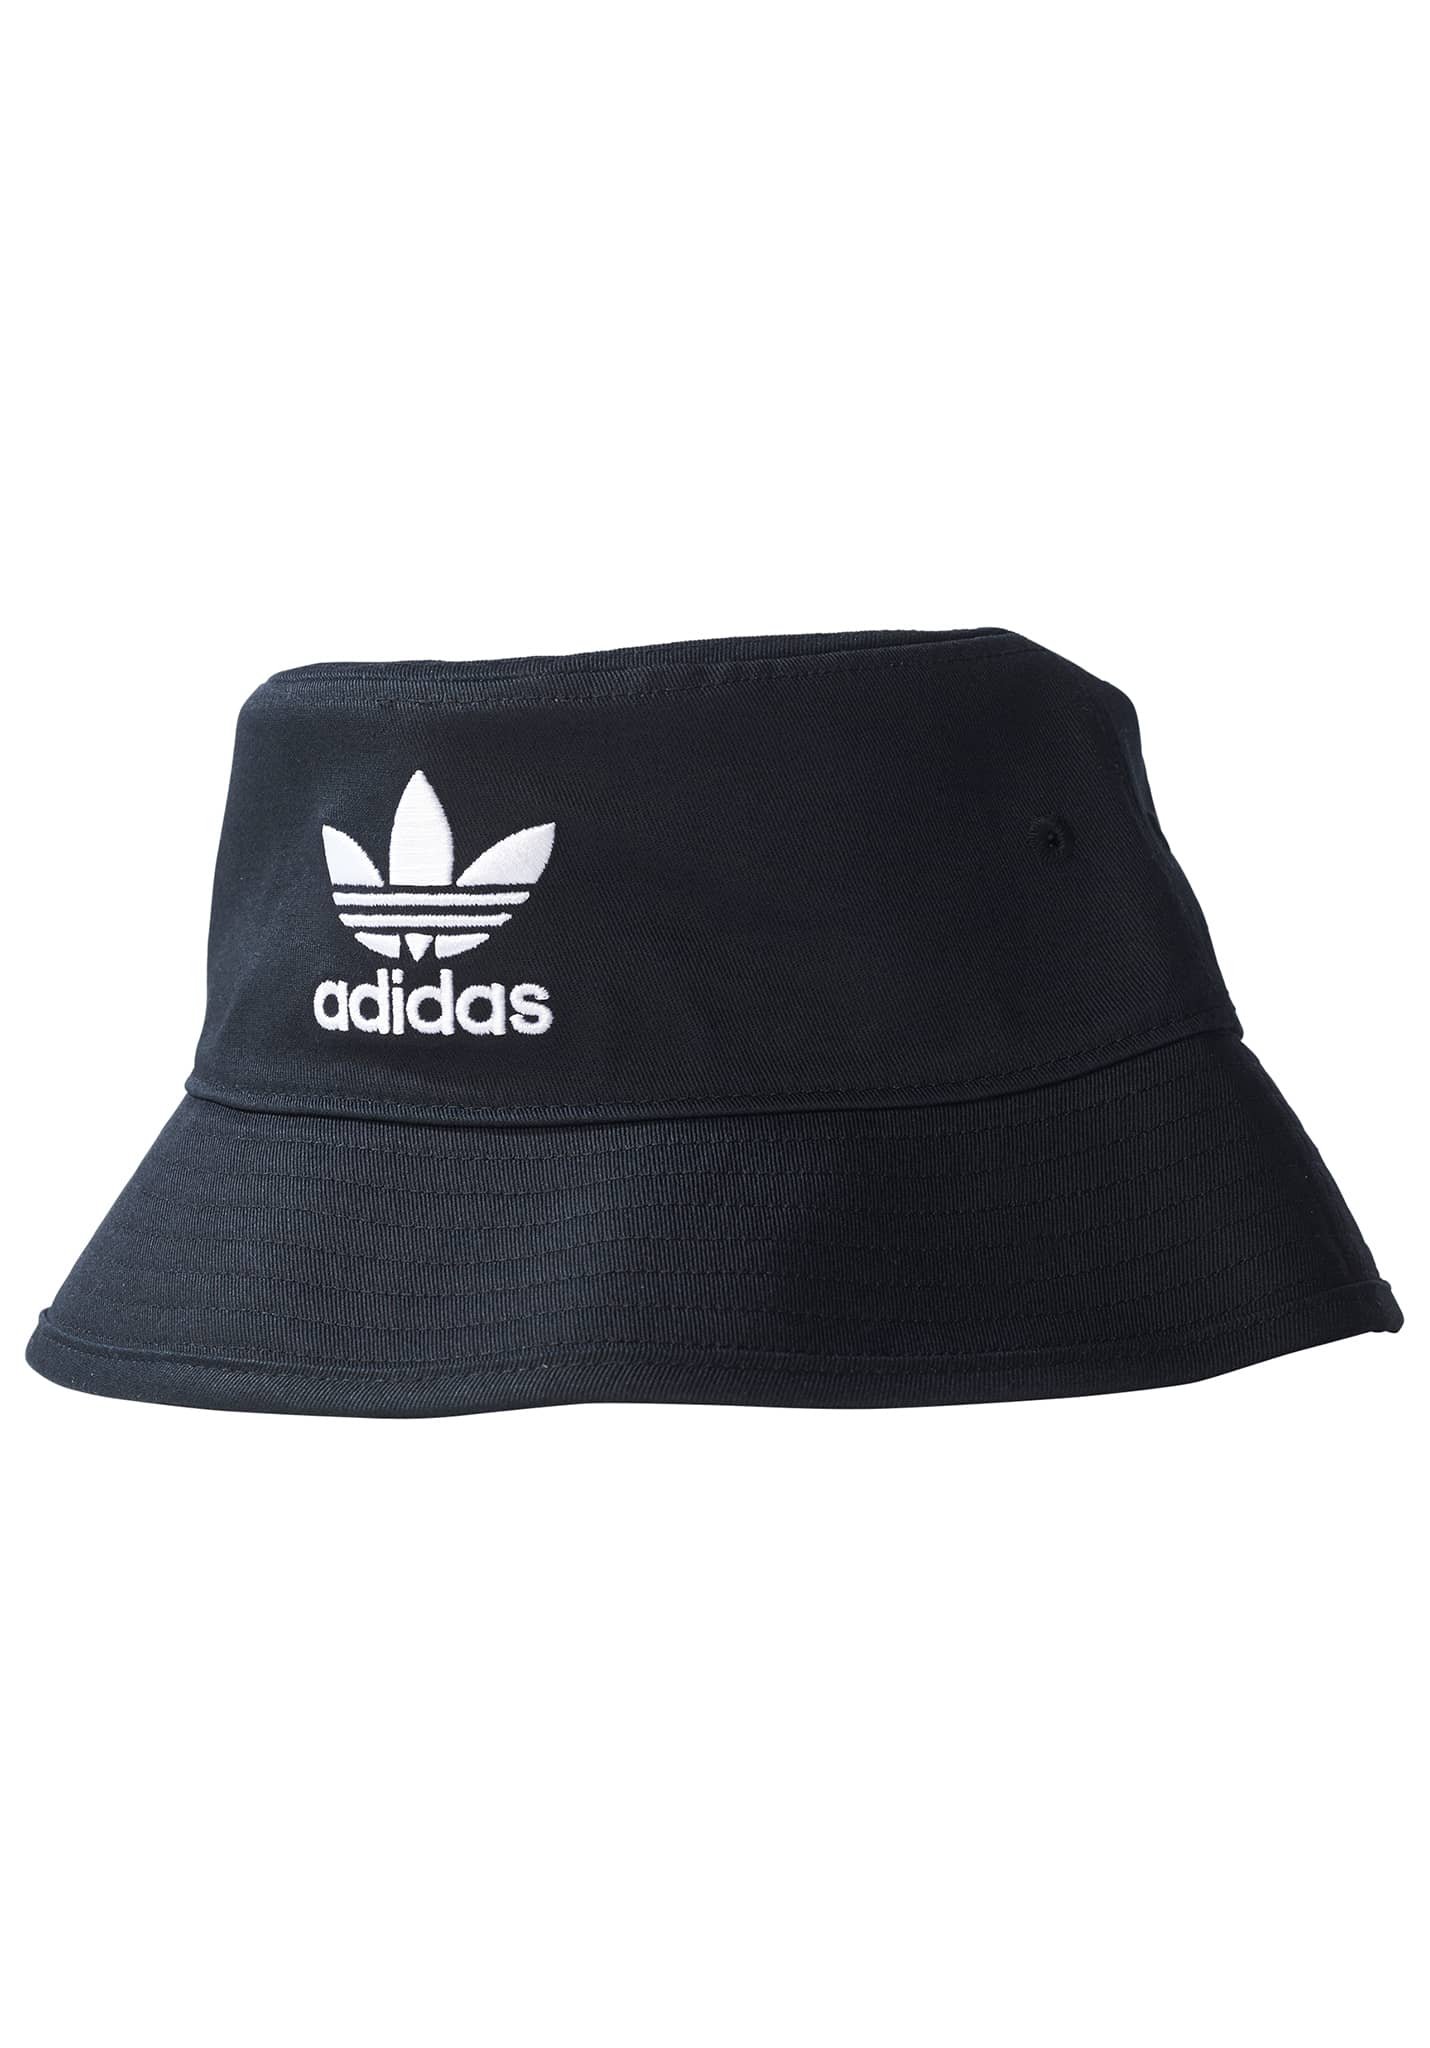 Adidas Originals Bucket Hat Hut black-white L